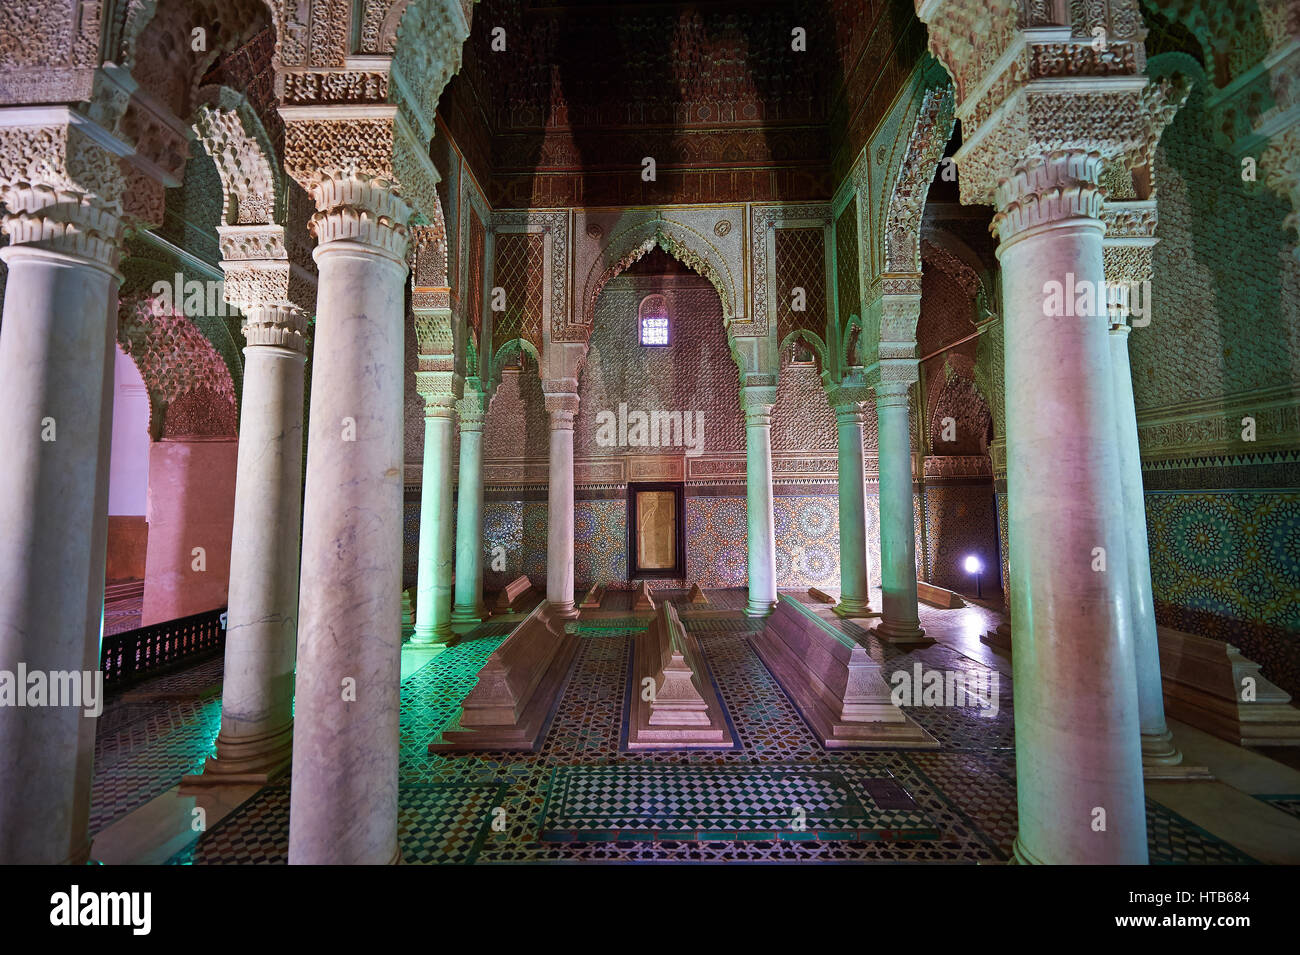 L'architecture arabesque la tombe d'al-Mansur fils dans les tombeaux saadiens le 16ème siècle le mausolée de souverains Saadiens, Marrakech, Maroc Banque D'Images